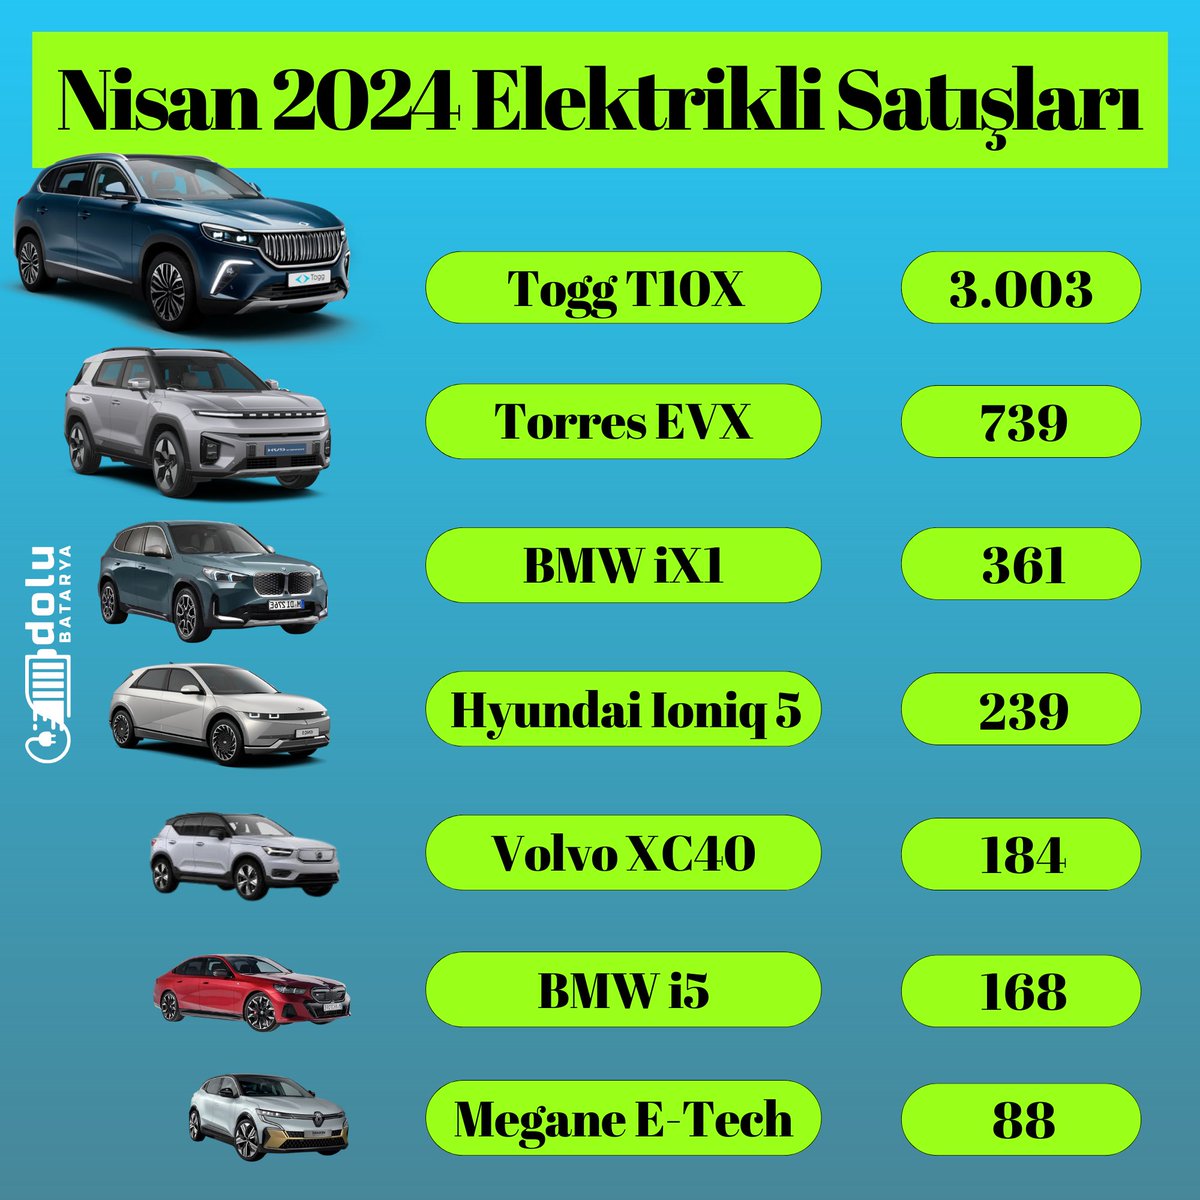 ⚡Togg satışları tekrar 3.000'i aştı! Nisanda Türkiye'de satılan elektrikli otomobil sayısı 6.546 oldu. Faizsiz finansman desteği ile yerli otomobil #Togg'a ilgi tekrar artmış oldu. Geçen ay 3.003 adet satış ile neredeyse pazarın yarısını oluşturan Togg'u 739 satışla KG…